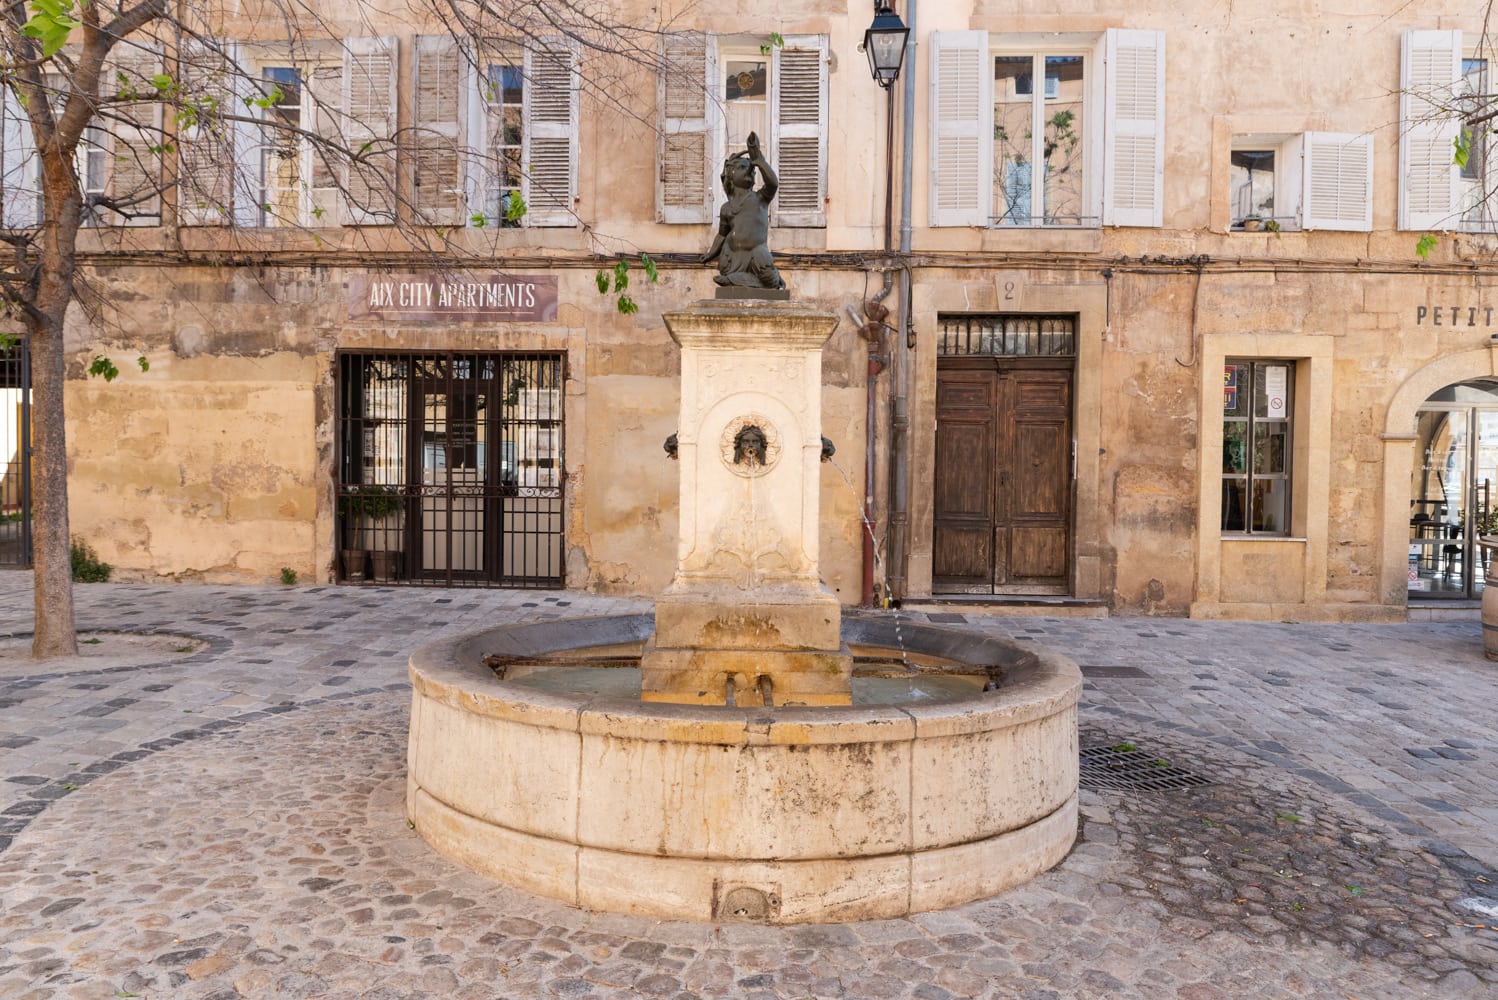 Vieille ville d'Aix-en-Provence